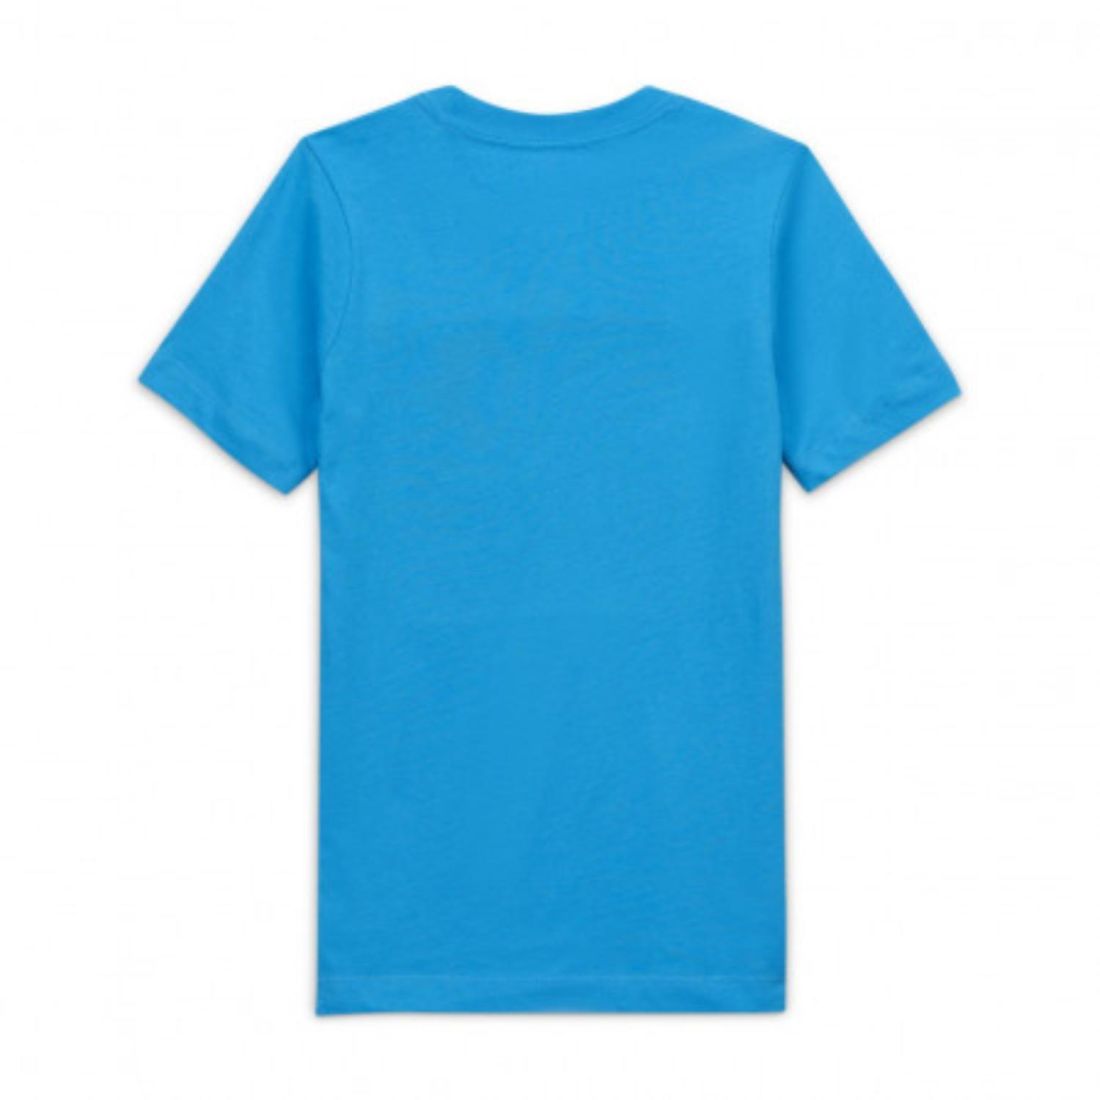 Удобная детская футболка Nike B NSW AIR TEE SS